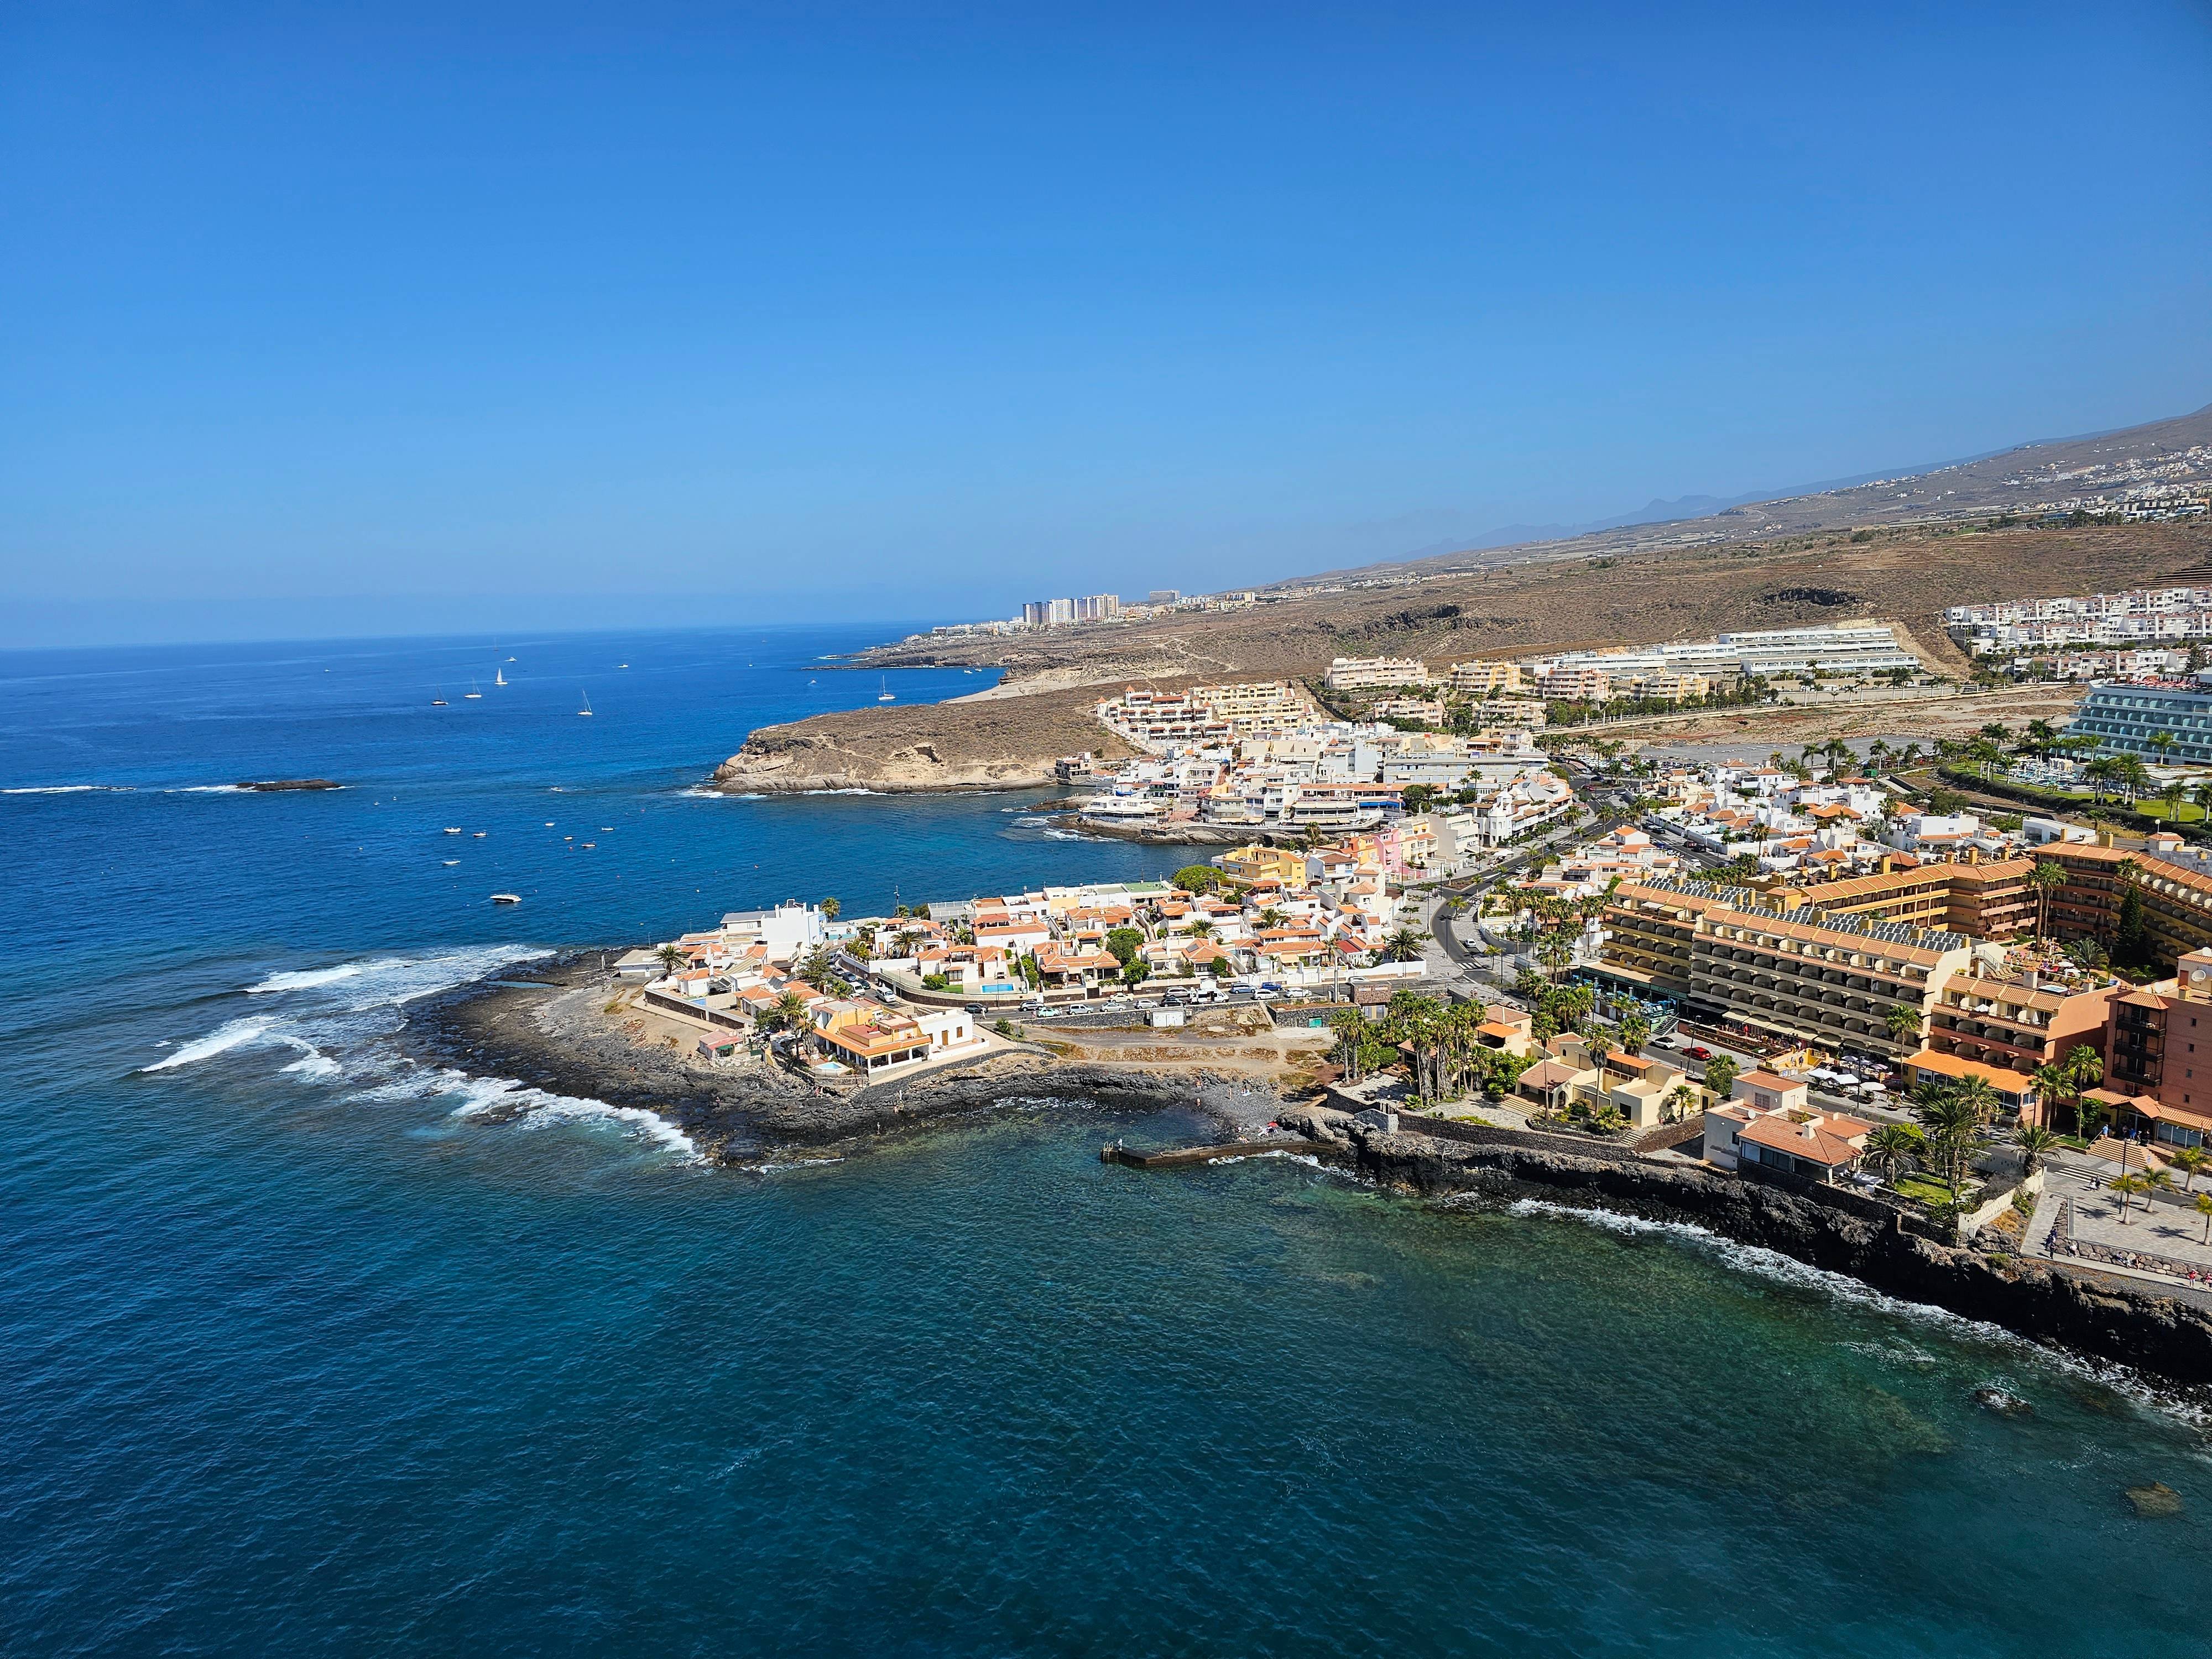 Picture from Area related to Puerto de Los Cristianos, Sueño Azul, Montaña el Mojón shoot by Romano Serra